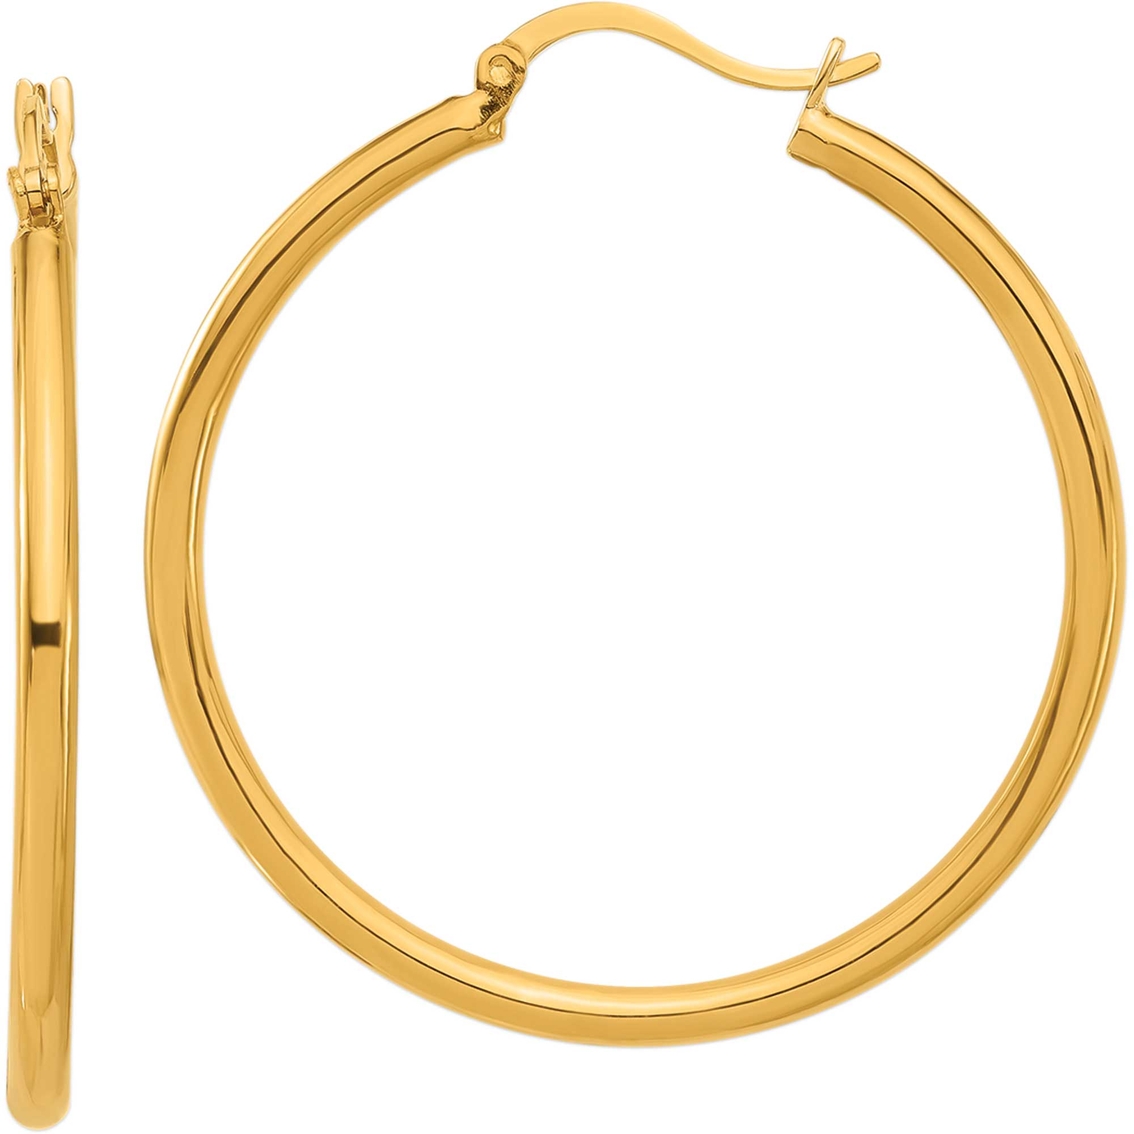 24k Pure Gold Medium High Polish Classic Hoop Earrings | Gold Earrings ...